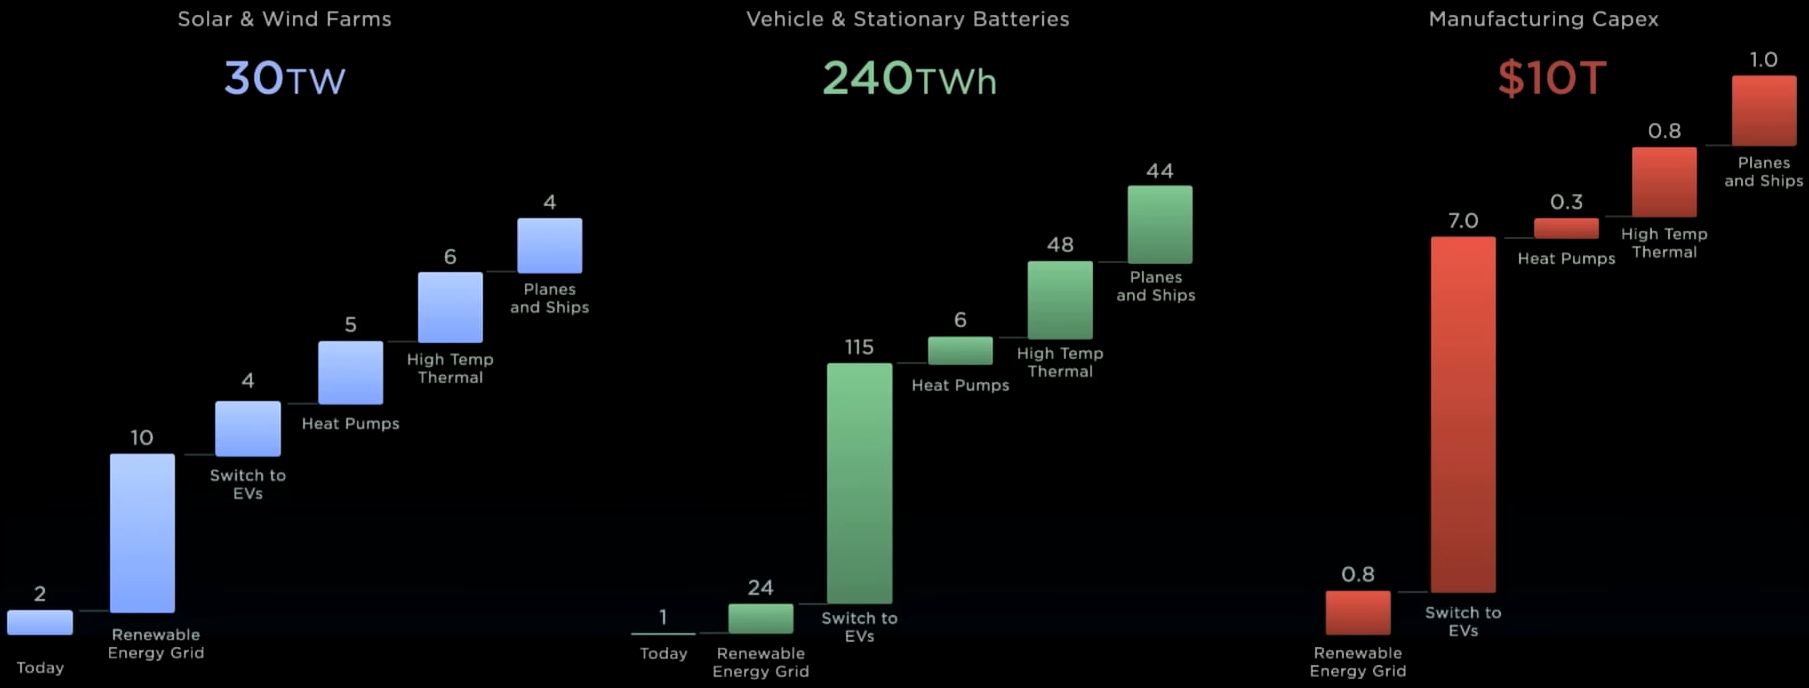 Tesla uvádí, že za investici 10 bilionů USD je schopná zásobovat celou zemi udržitelnou energii. Zdroj: Tesla Investor Day.